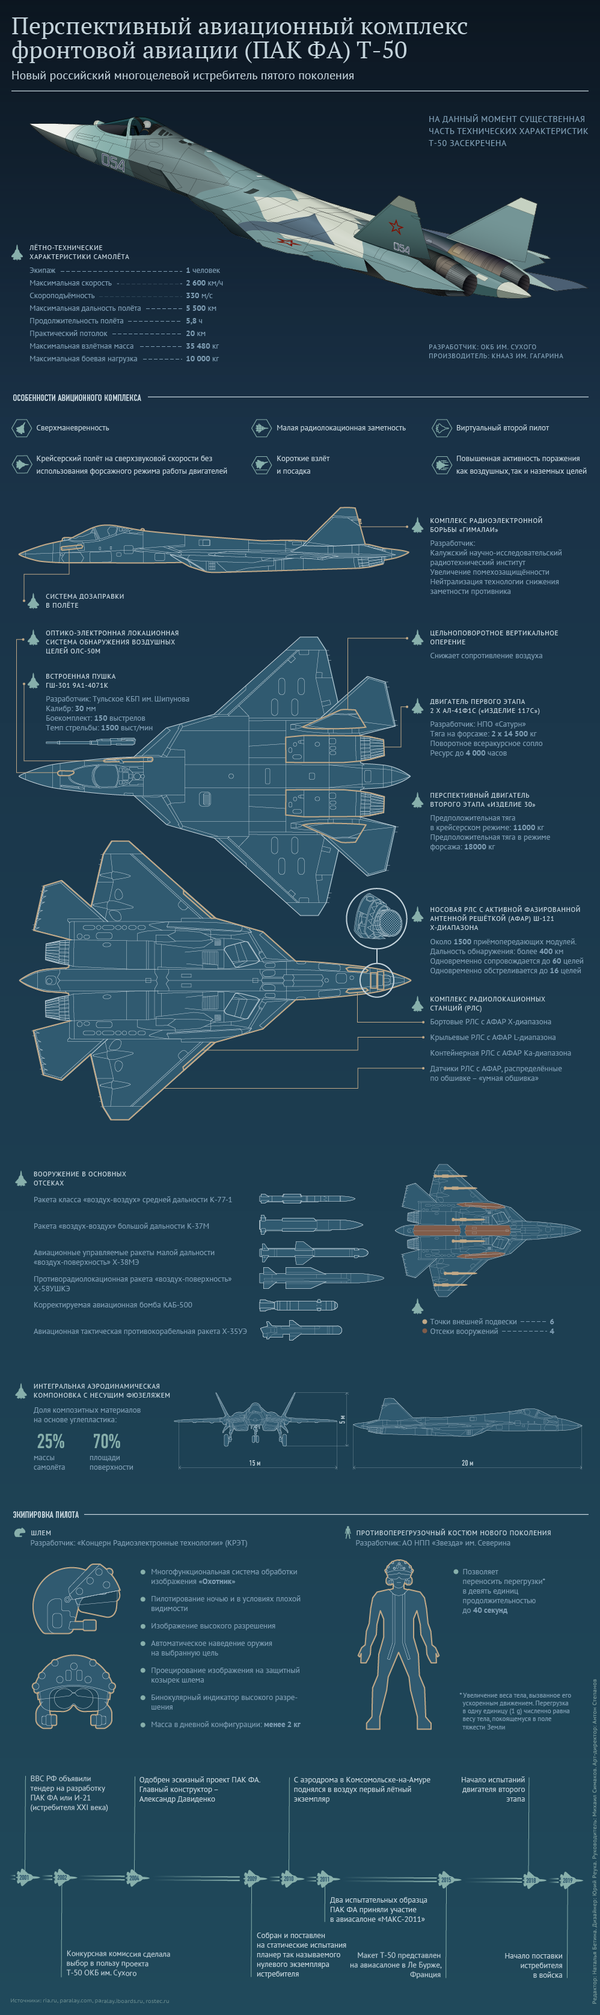 Перспективный авиационный комплекс фронтовой авиации Т-50 (ПАК ФА) – инфографика на sputnik.by - Sputnik Беларусь